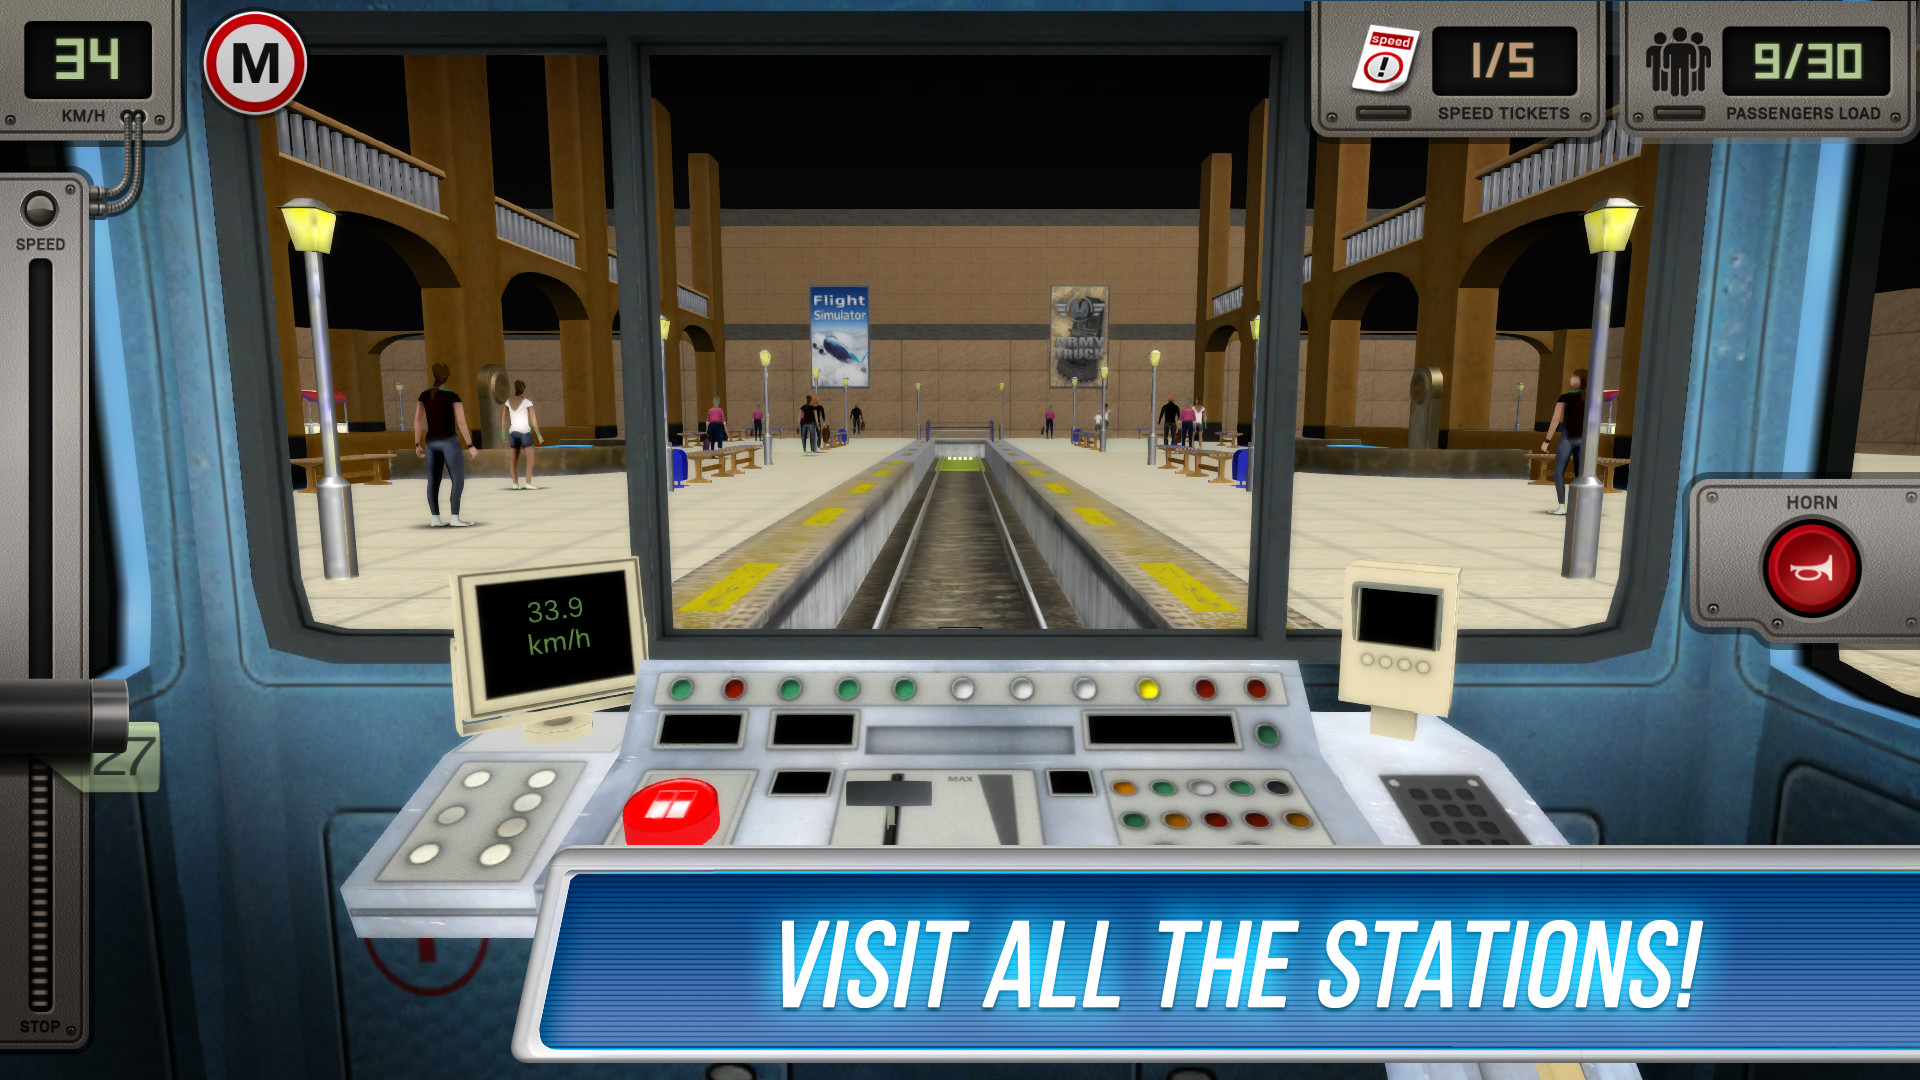 Сабвей симулятор 3д метро. Симулятор метро ps4. Русич Subway Simulator 3d. Метро симулятор 3д - поезда. Симулятор водителя метро